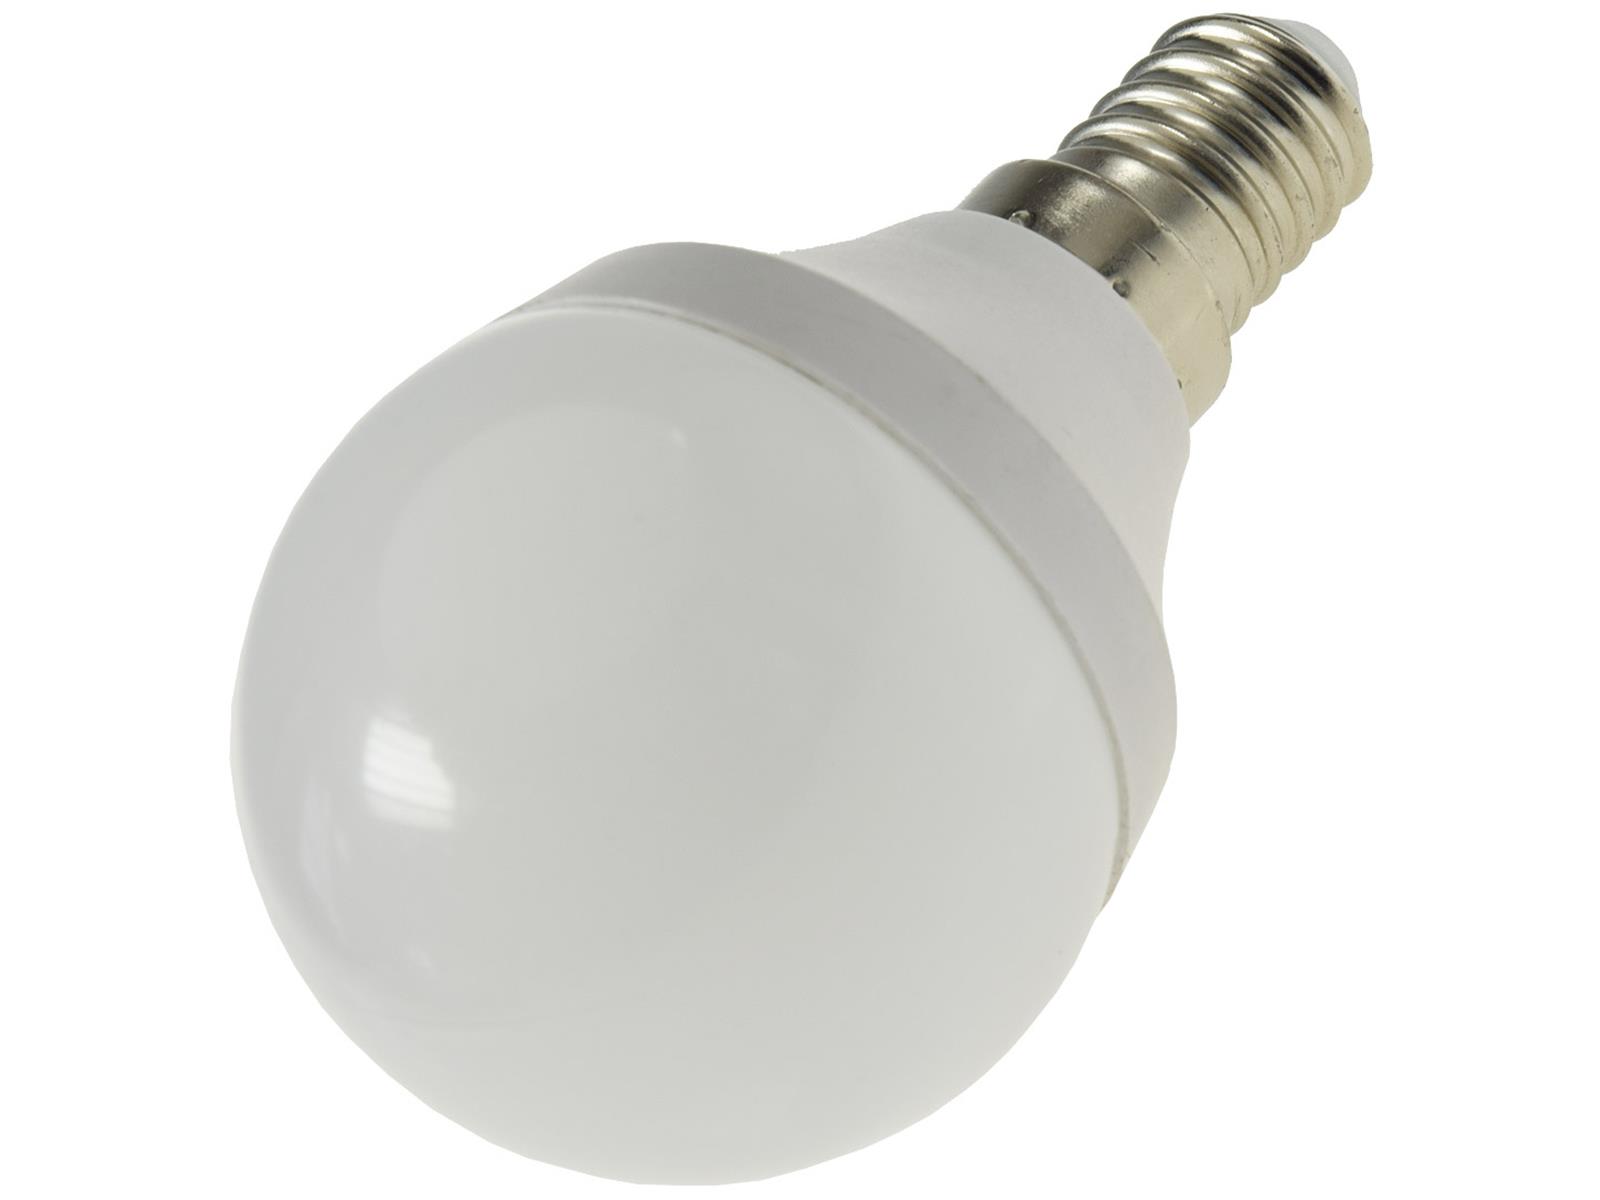 LED Tropfenlampe E14 "T70" warmweiß3000k, 700lm, 230V/7W